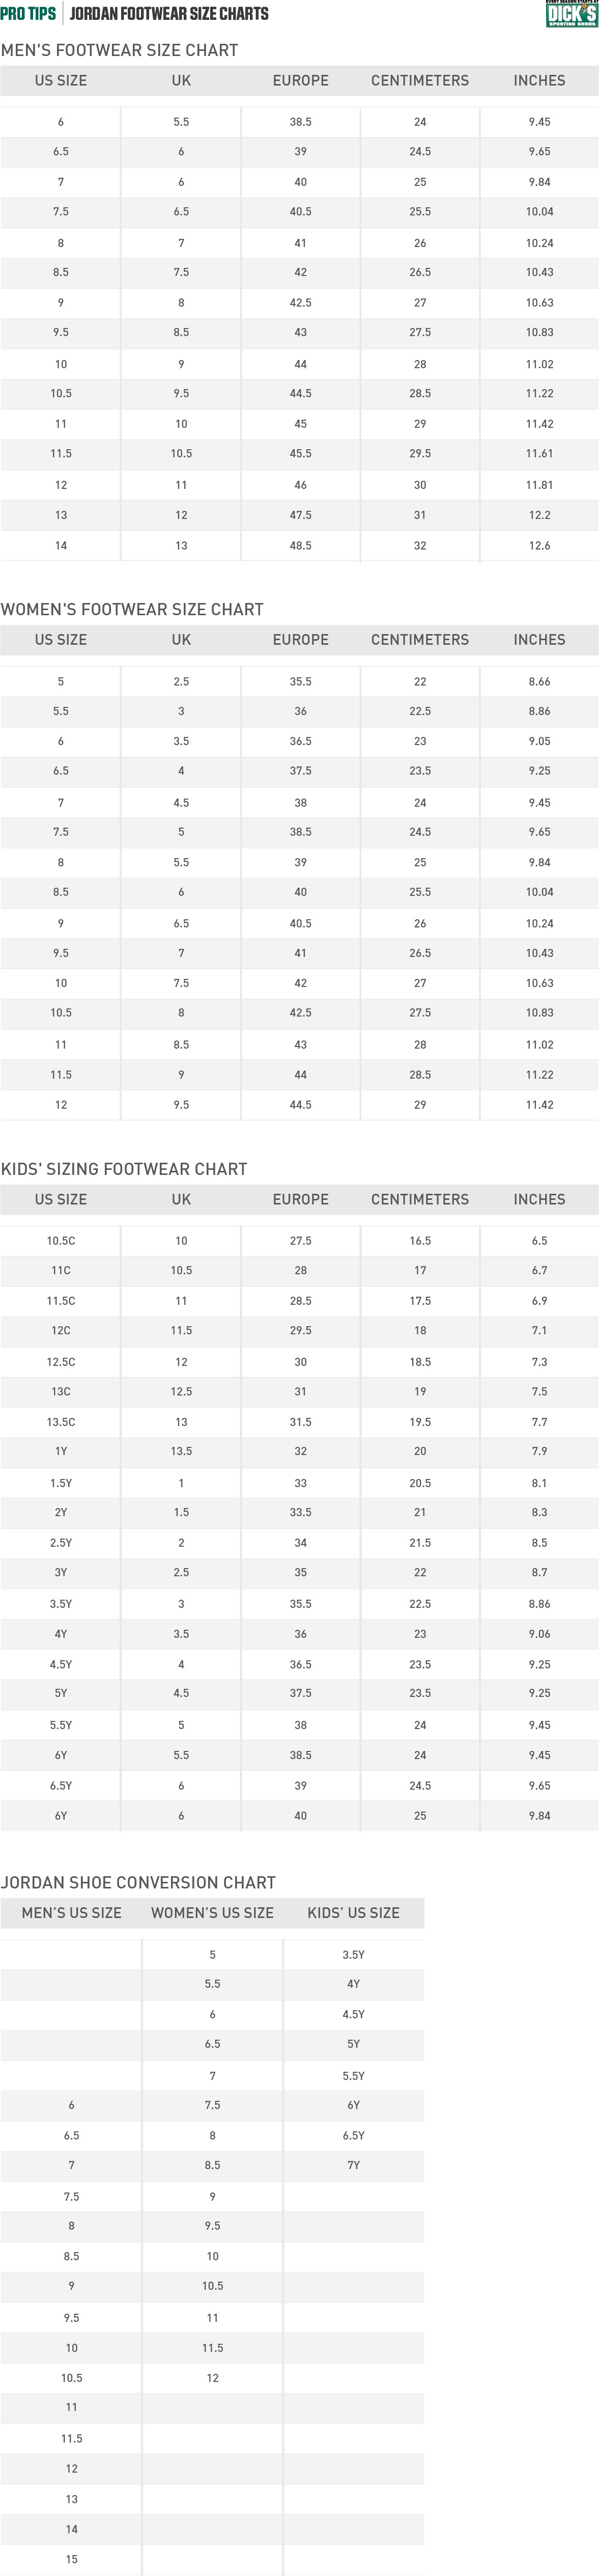 Nike® Jordan Footwear Size Charts PRO TIPS by DICK'S